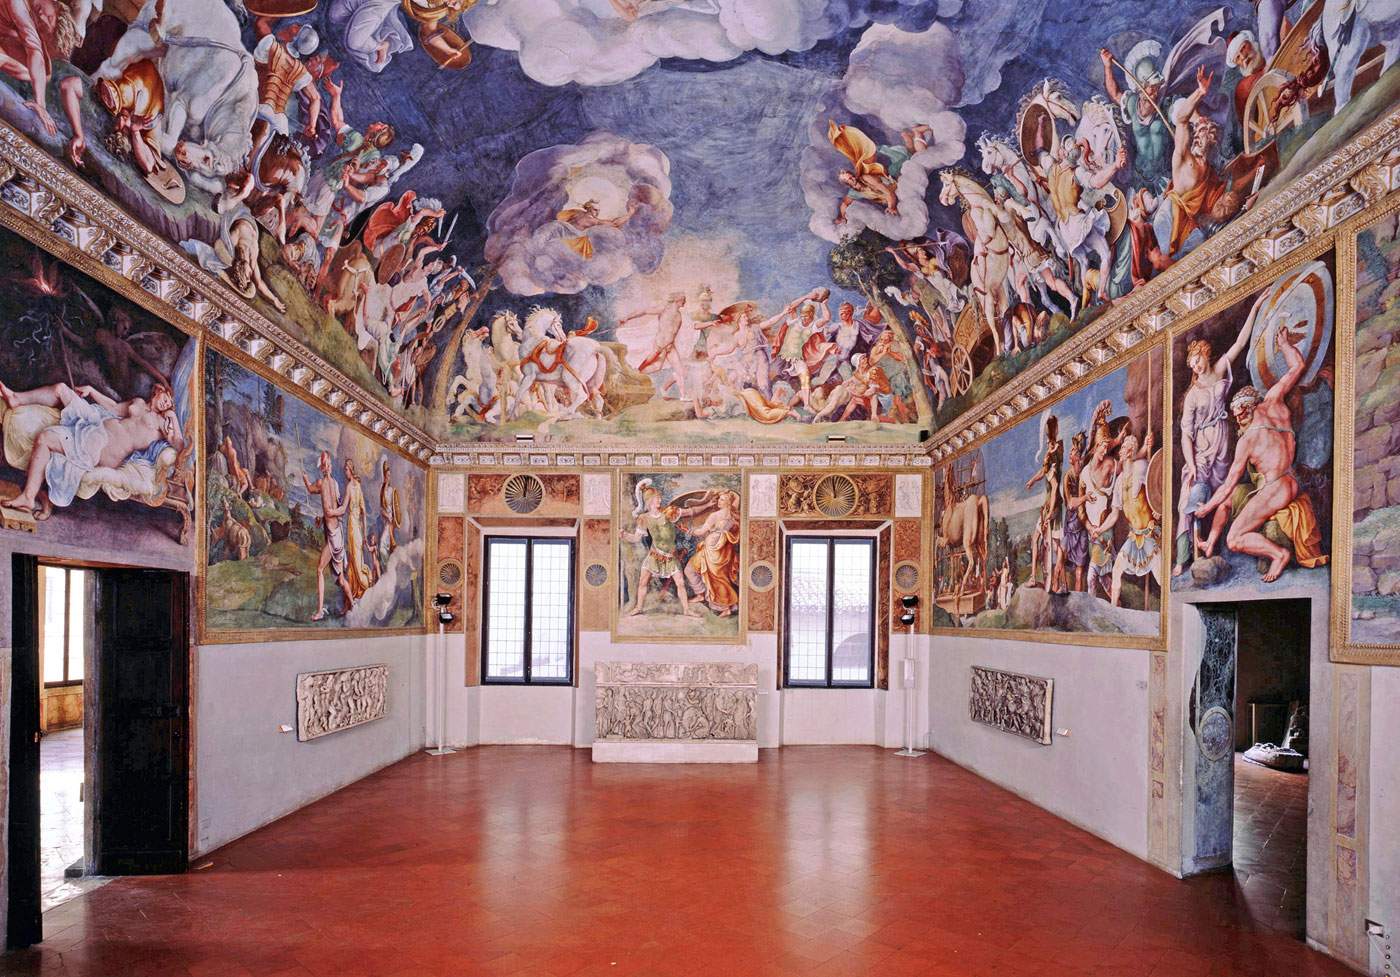 La grande mostra di Giulio Romano a Mantova. Ecco cosa vedremo in autunno a Palazzo Ducale